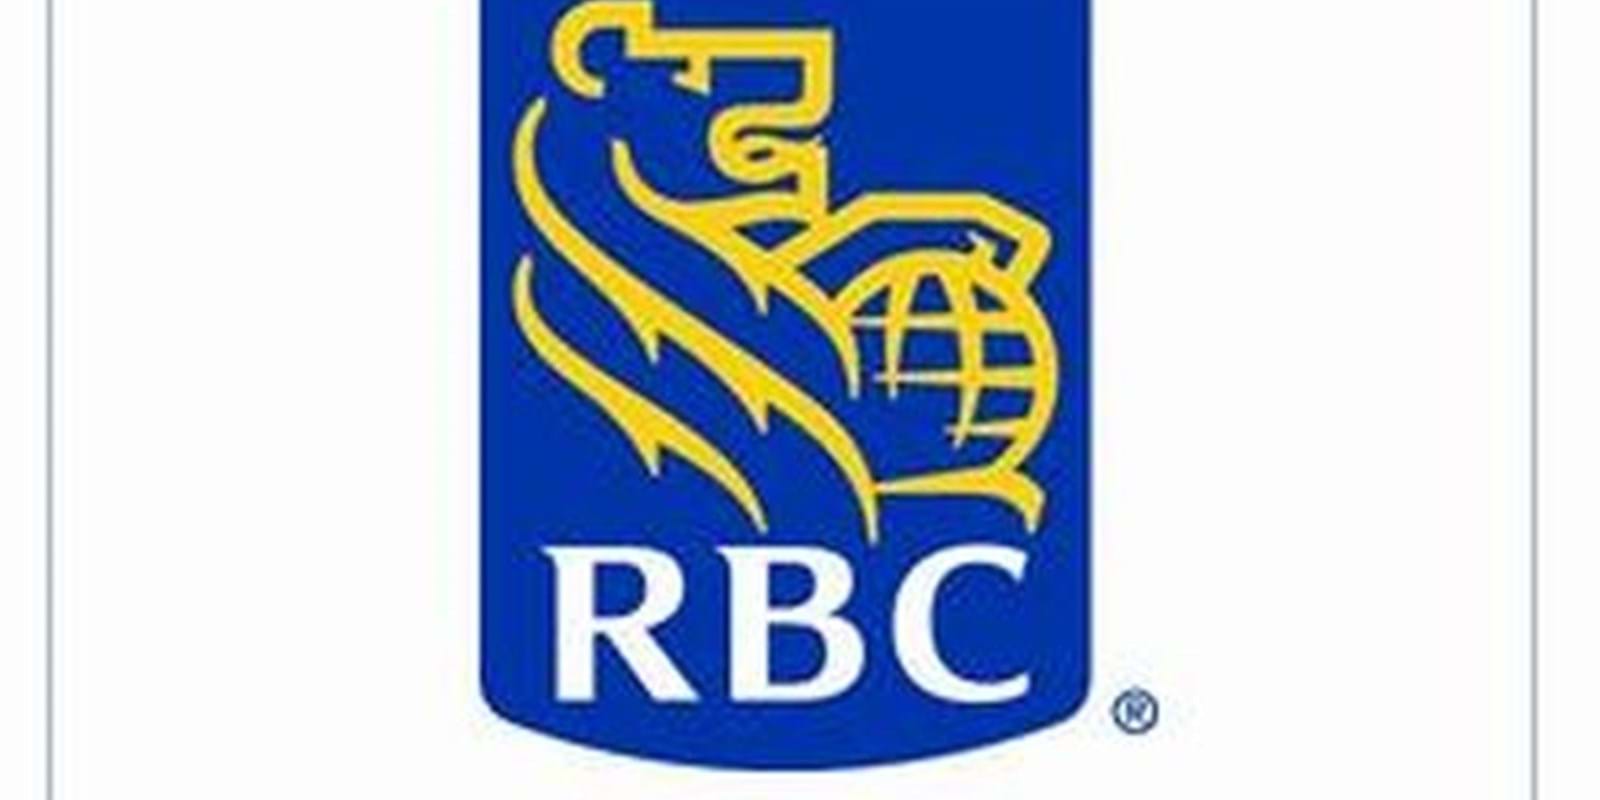 LES CANADIENS ÉPARGNENT MOINS, SELON UN SONDAGE DE RBC